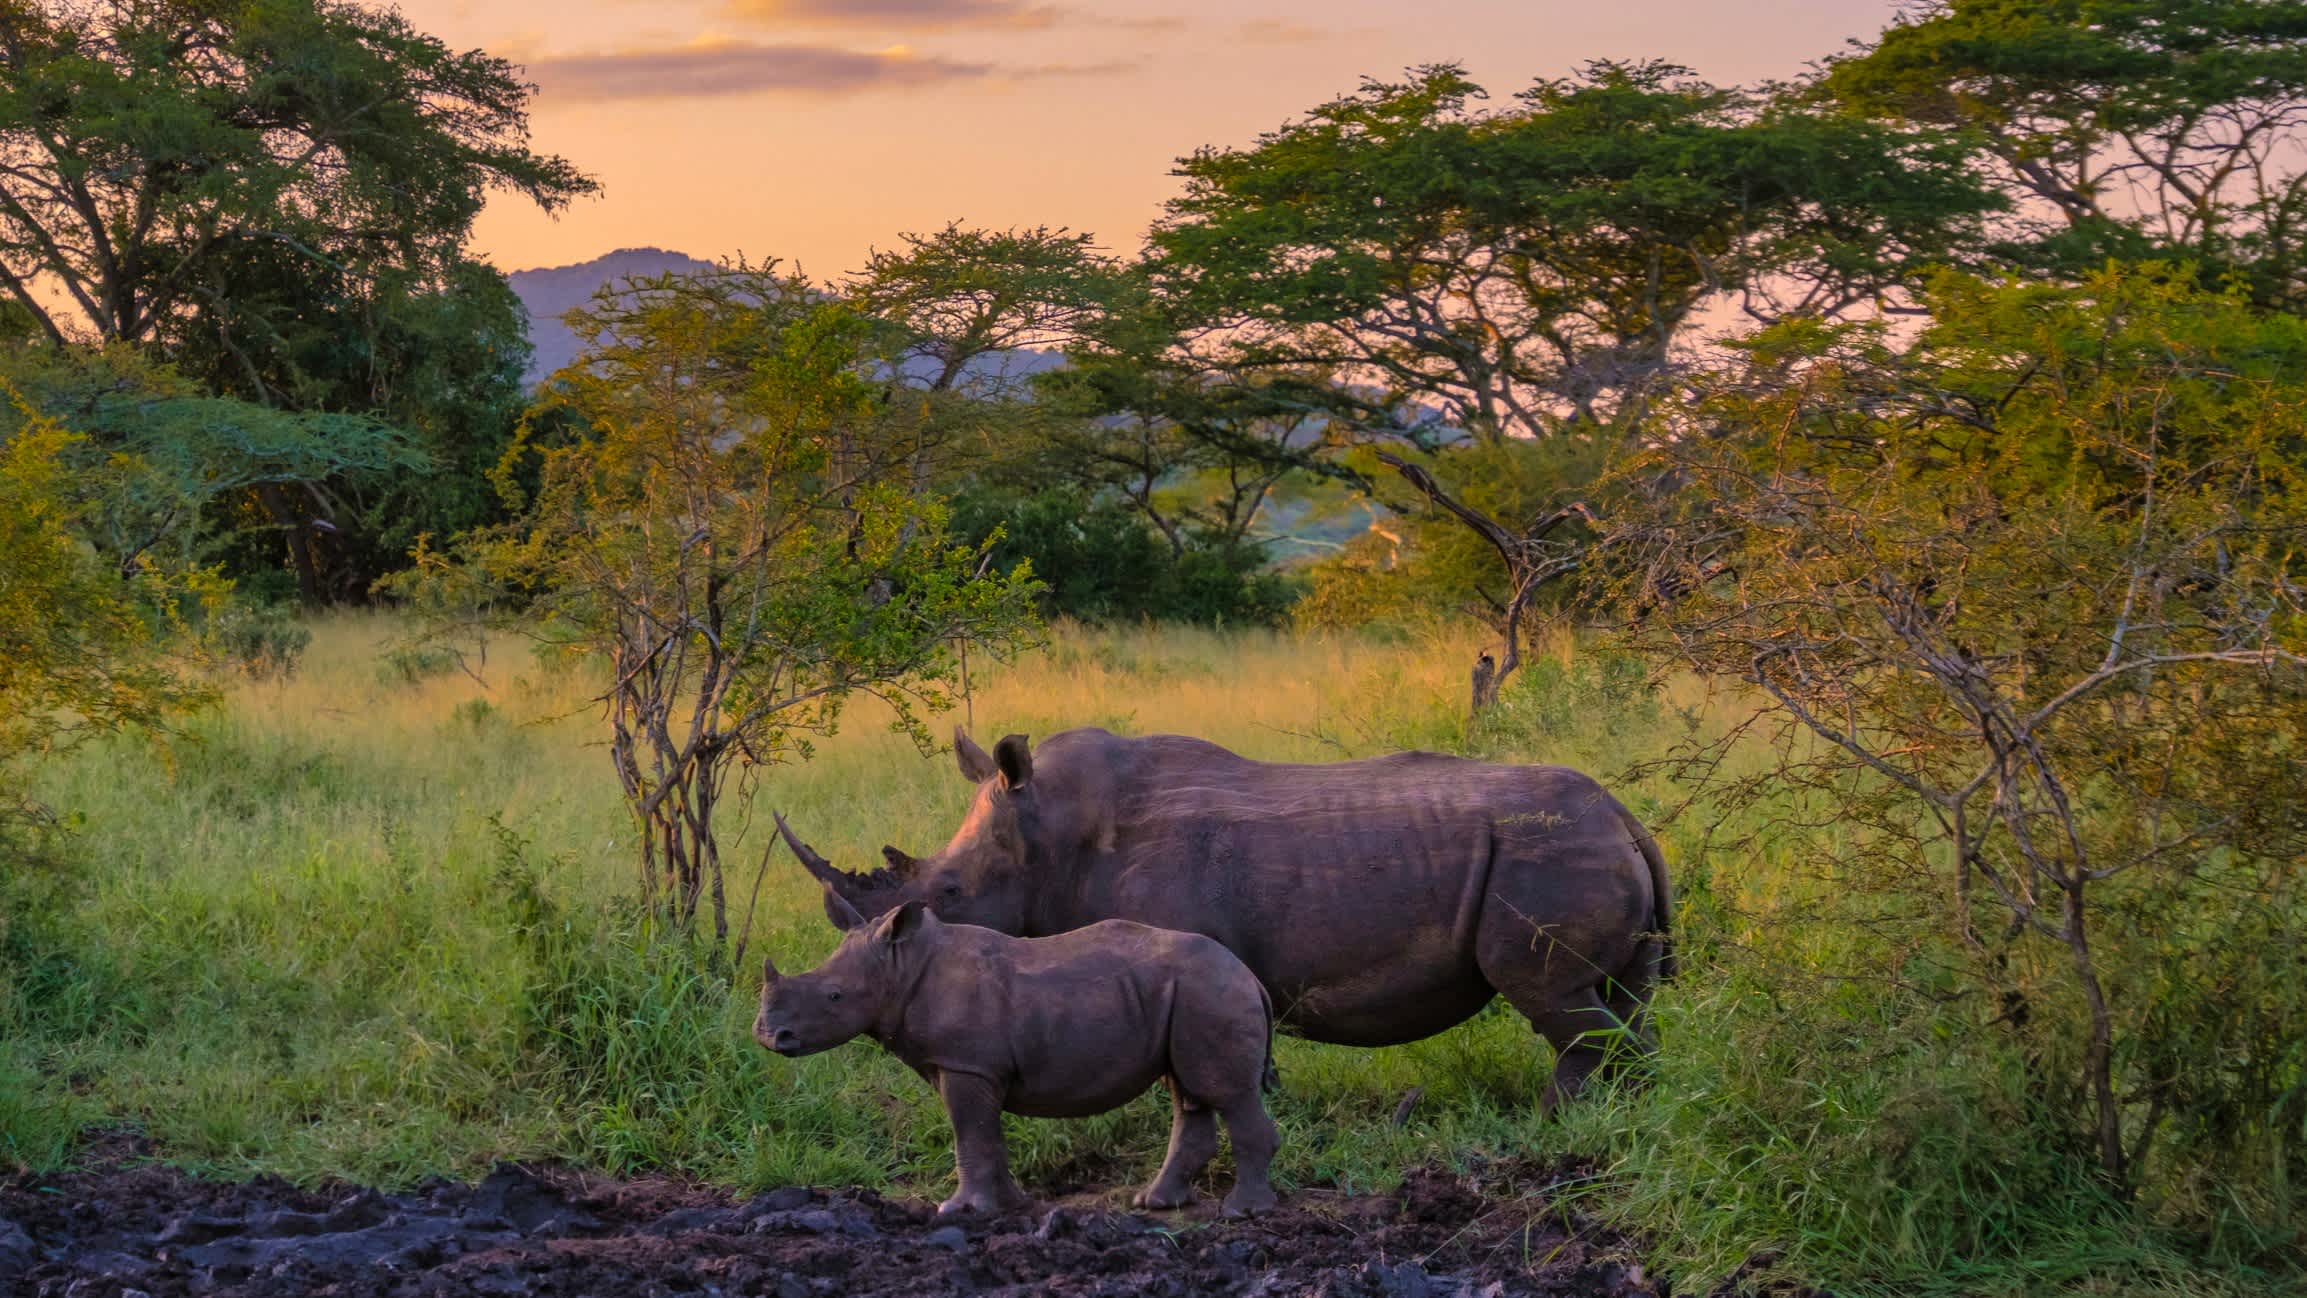 White Rhinos in der Nähe des Krüger-Nationalparks, Südafrika.

